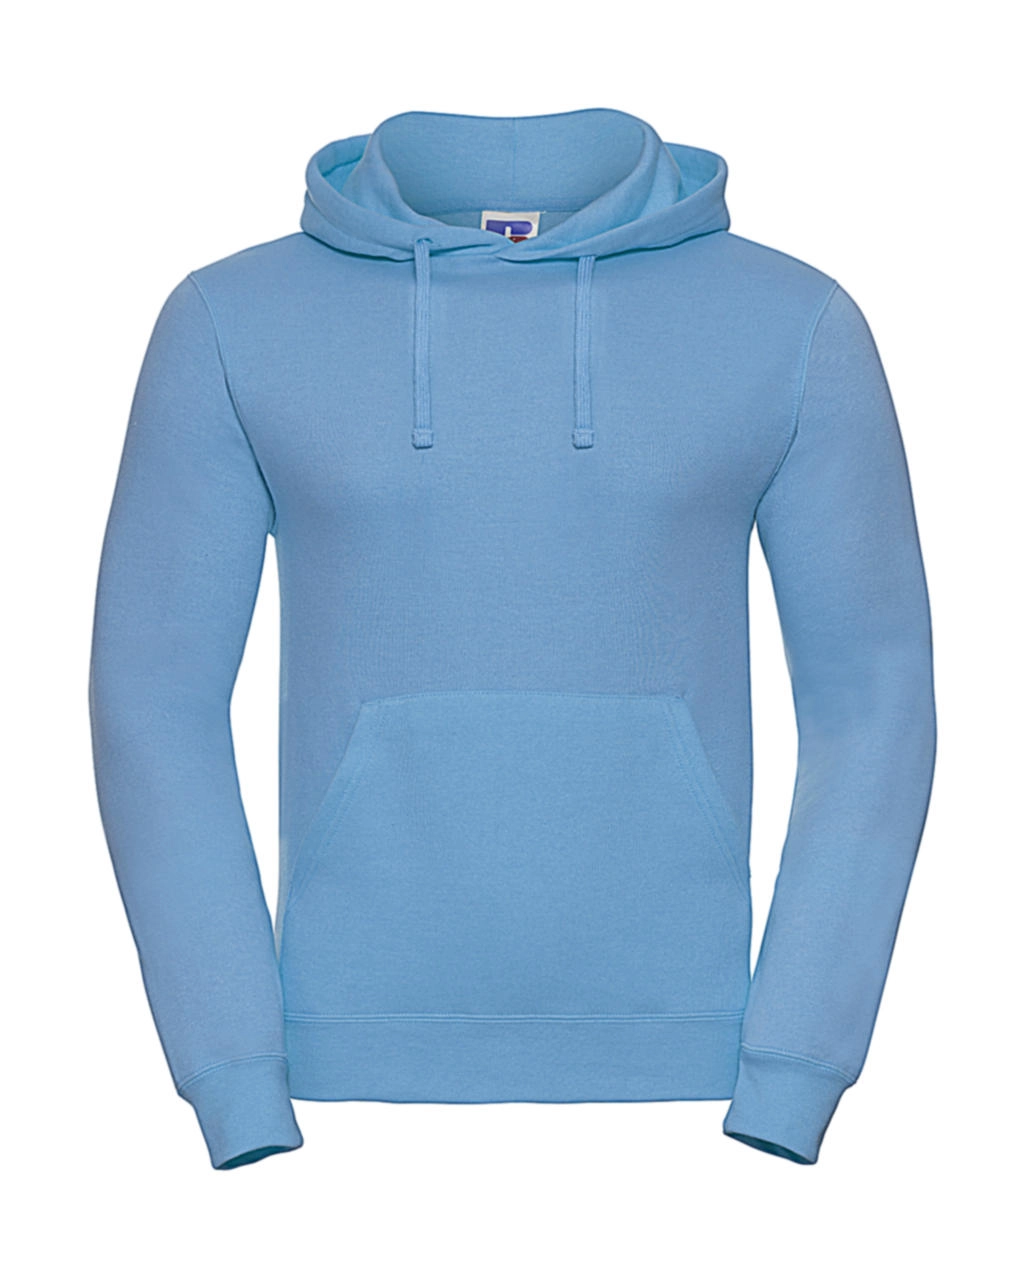 Hooded Sweatshirt zum Besticken und Bedrucken in der Farbe Sky mit Ihren Logo, Schriftzug oder Motiv.